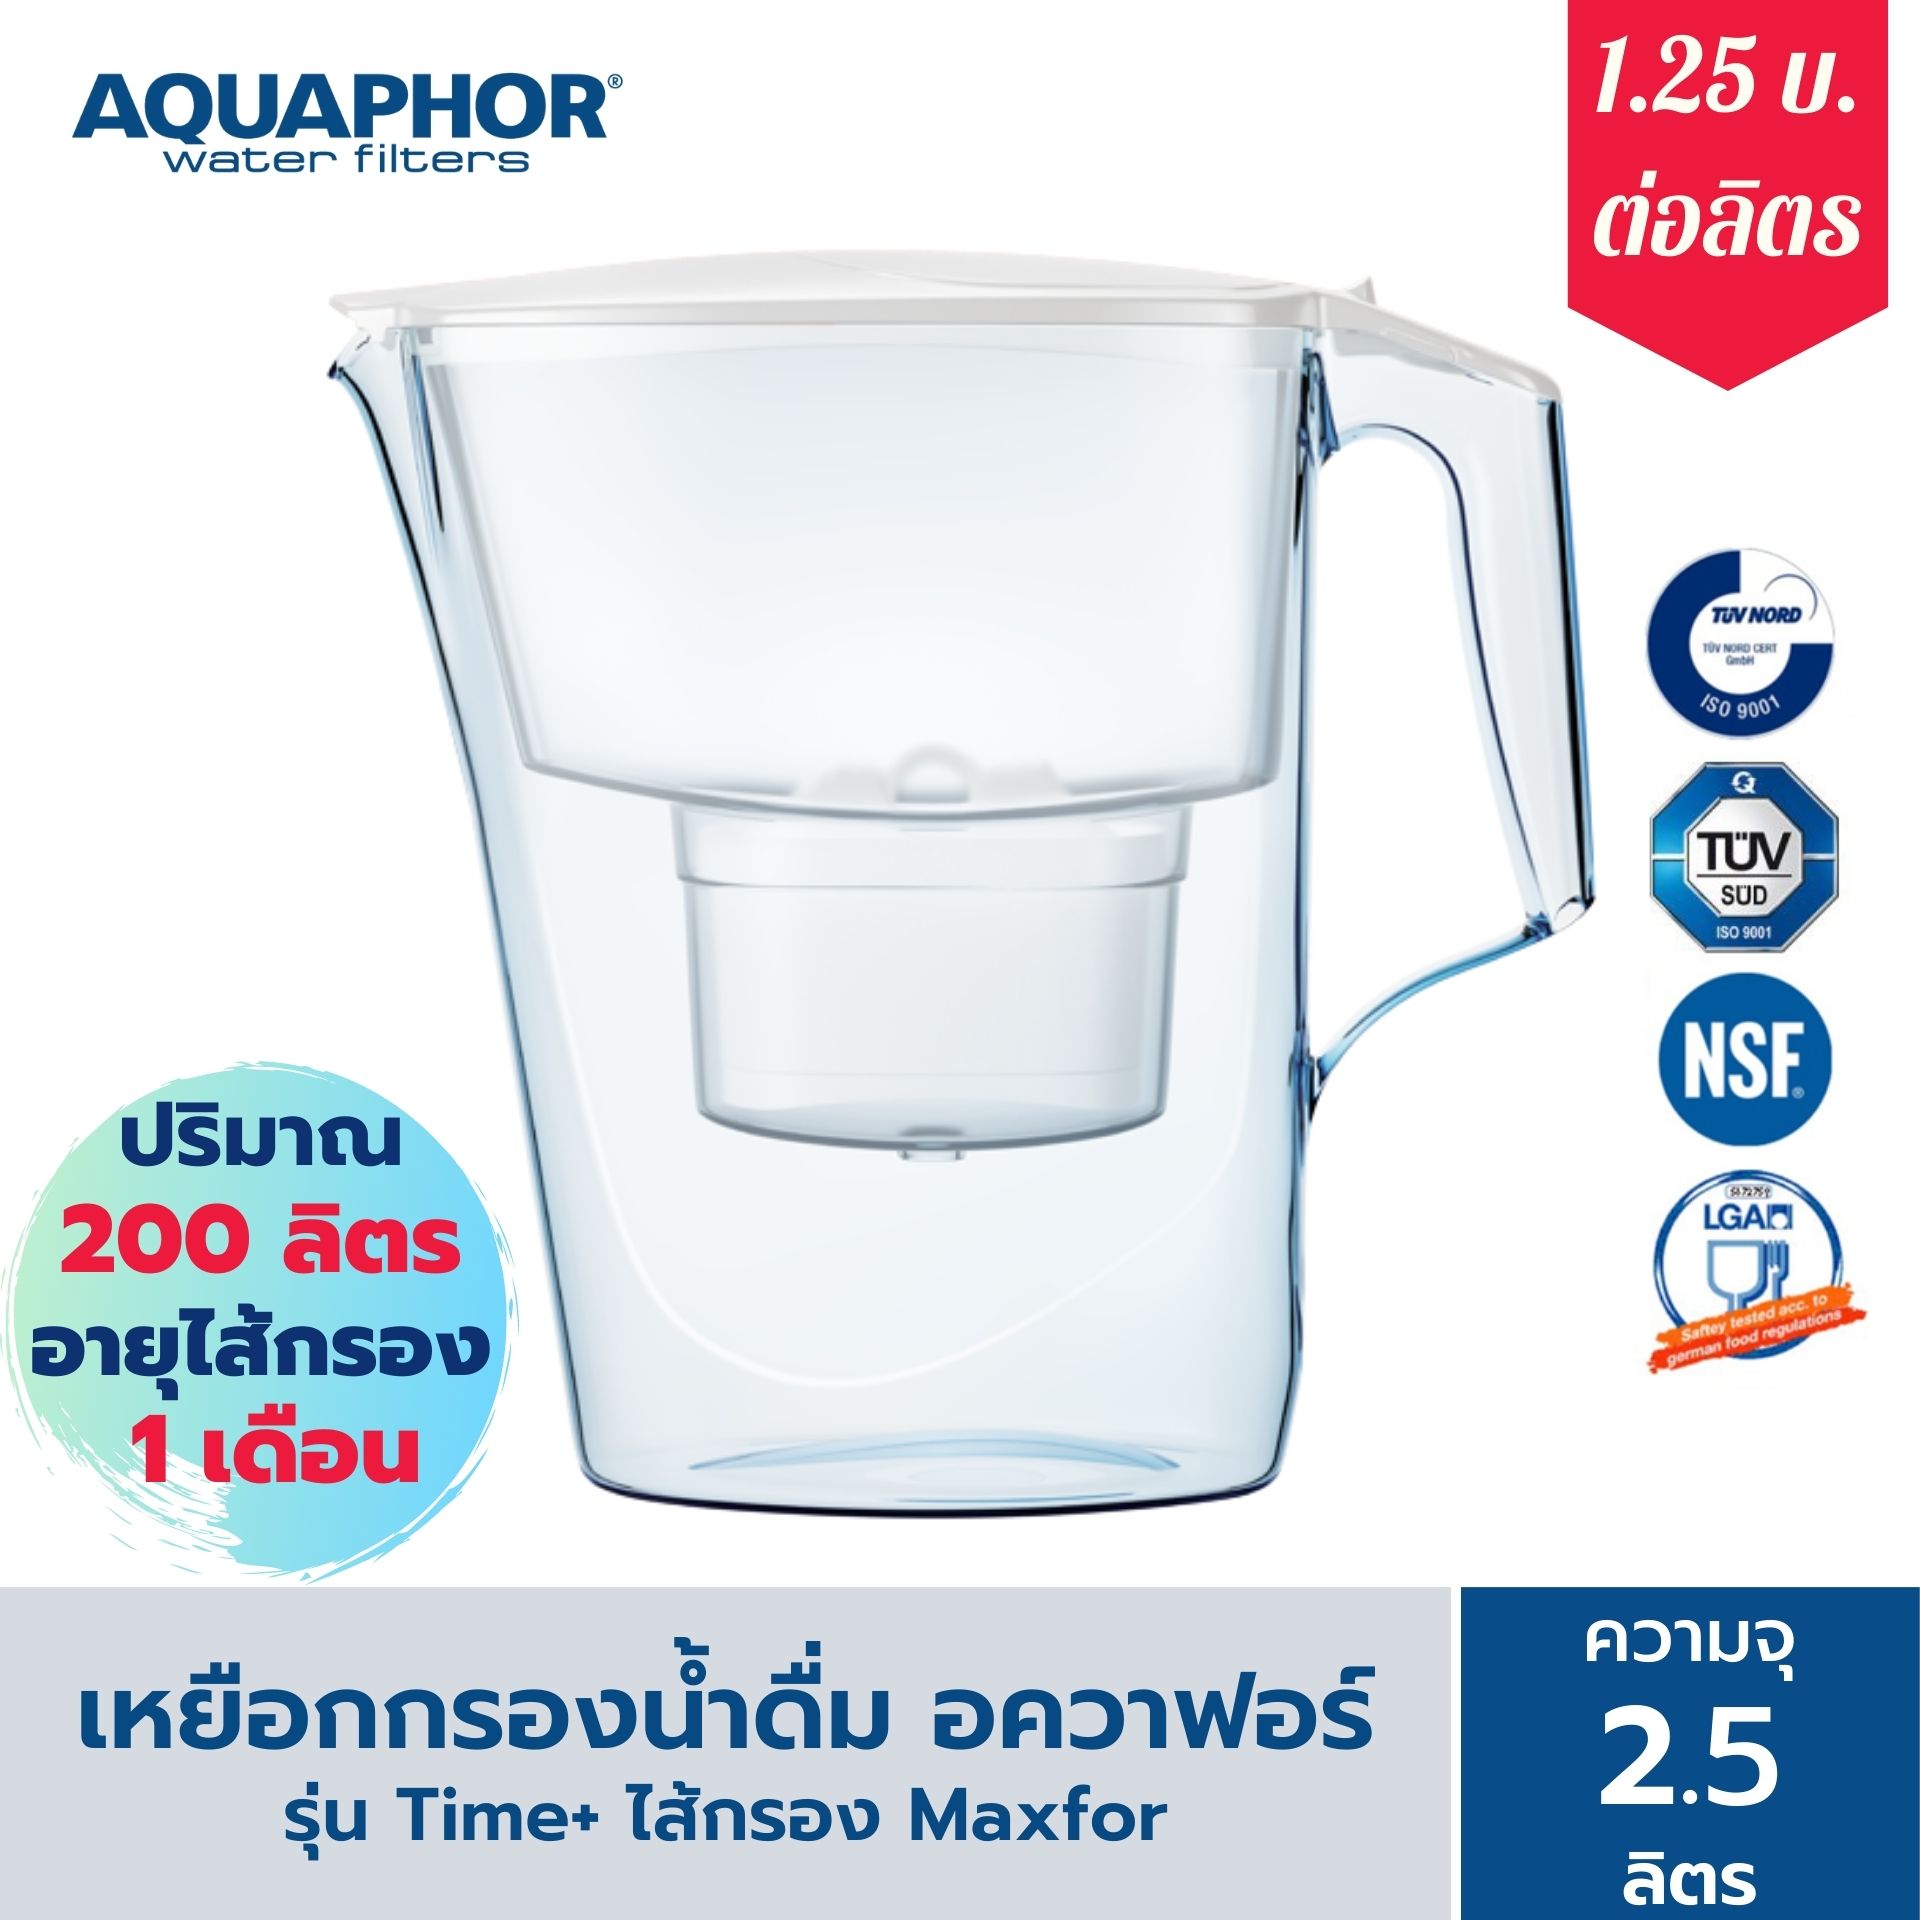 เหยือกกรองน้ำ AQUAPHOR (อควาฟอร์)  รุ่น Time B25 (สีขาว) เครื่องกรองน้ำ สำหรับ กรองน้ำดื่ม กรองน้ำประปา ผลิตน้ำดื่ม ได้มาตรฐาน เครื่องกรองน้ำพกพา ความจุ 2.5 ลิตร AQUAPHOR Thailand Time Model Water Filter Jug, 2.5 L (White, B25 cartridge)